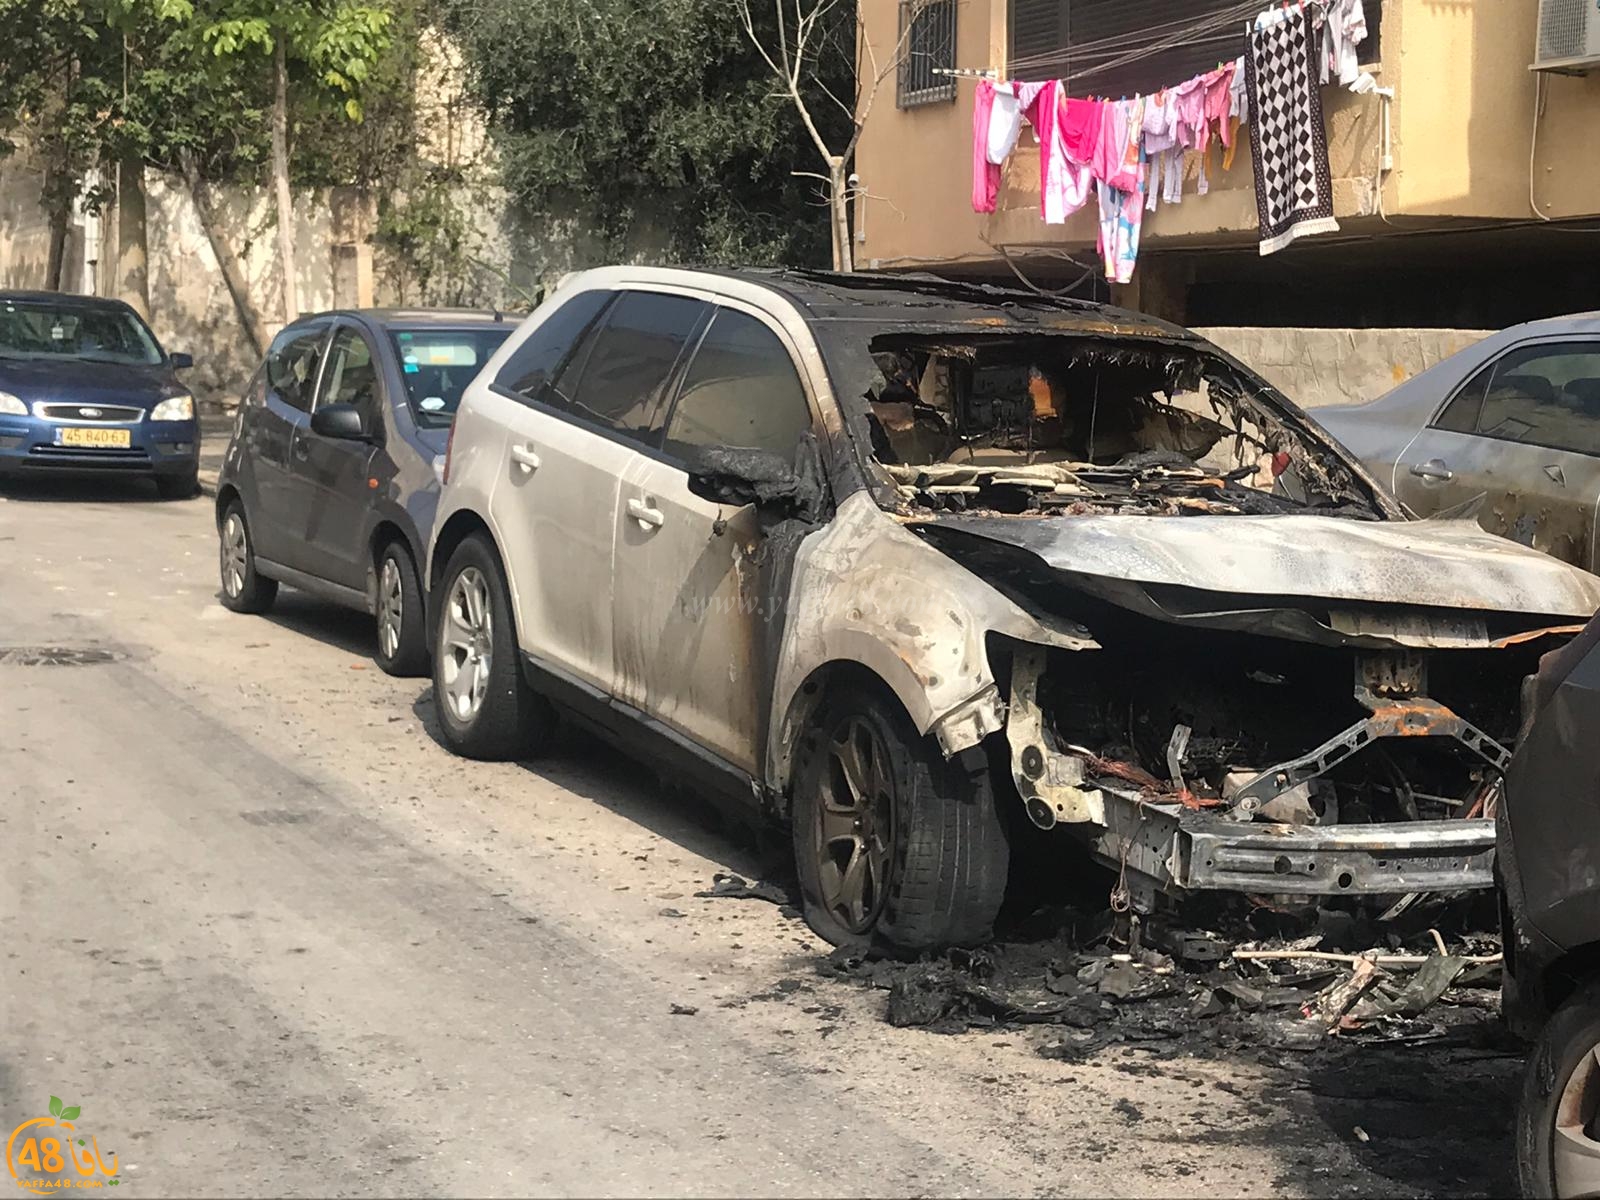  الليلة الماضية: حريق يتسبب بأضرار لـ3 سيارات في يافا 